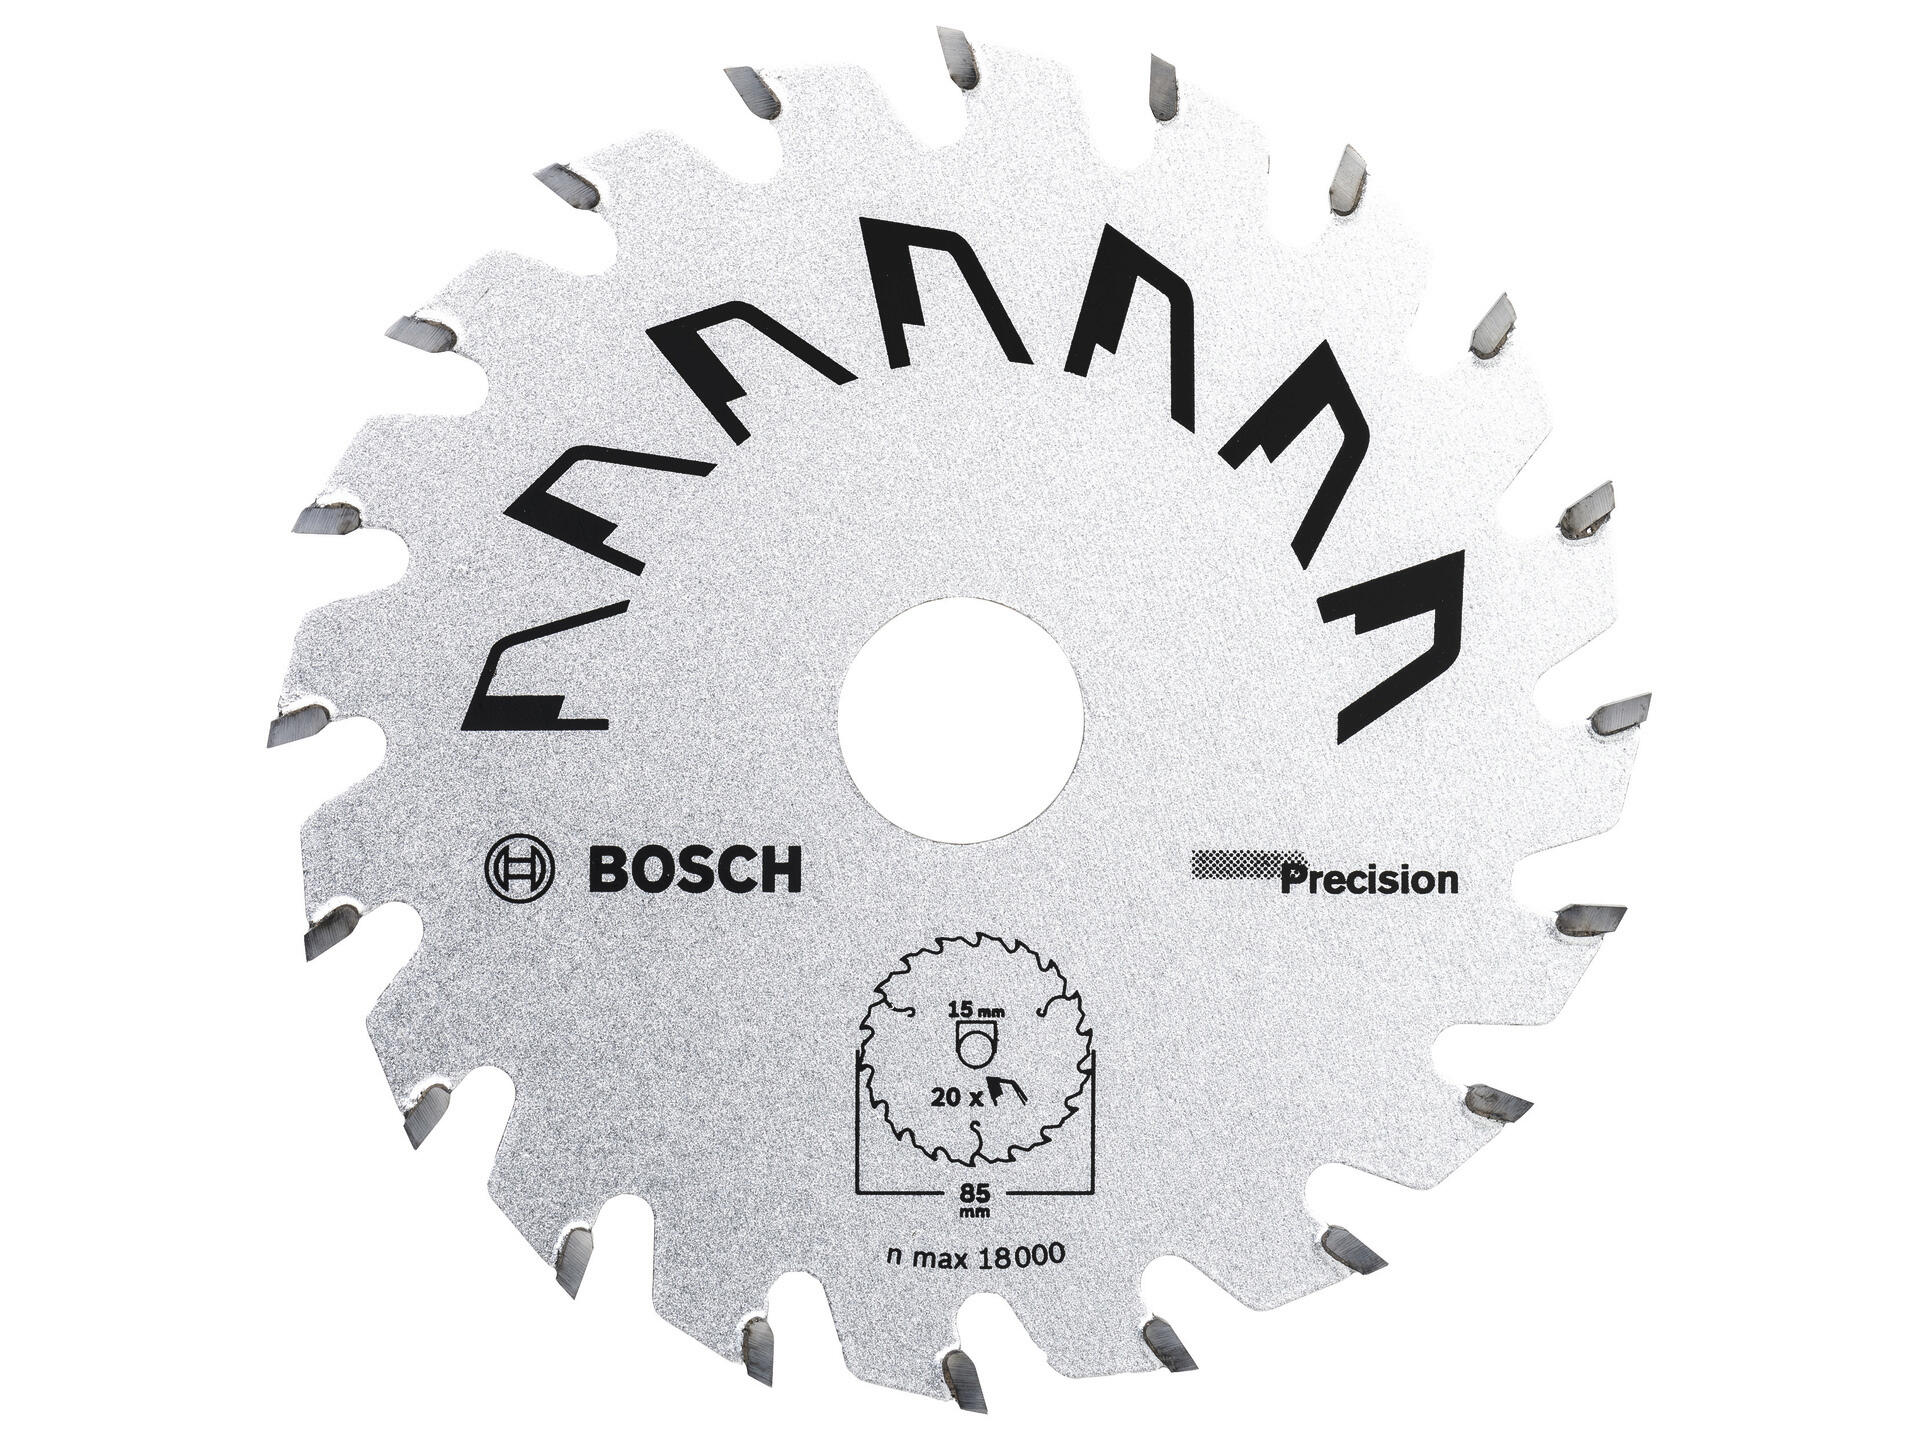 Bosch Precision cirkelzaagblad 85mm 20T hout